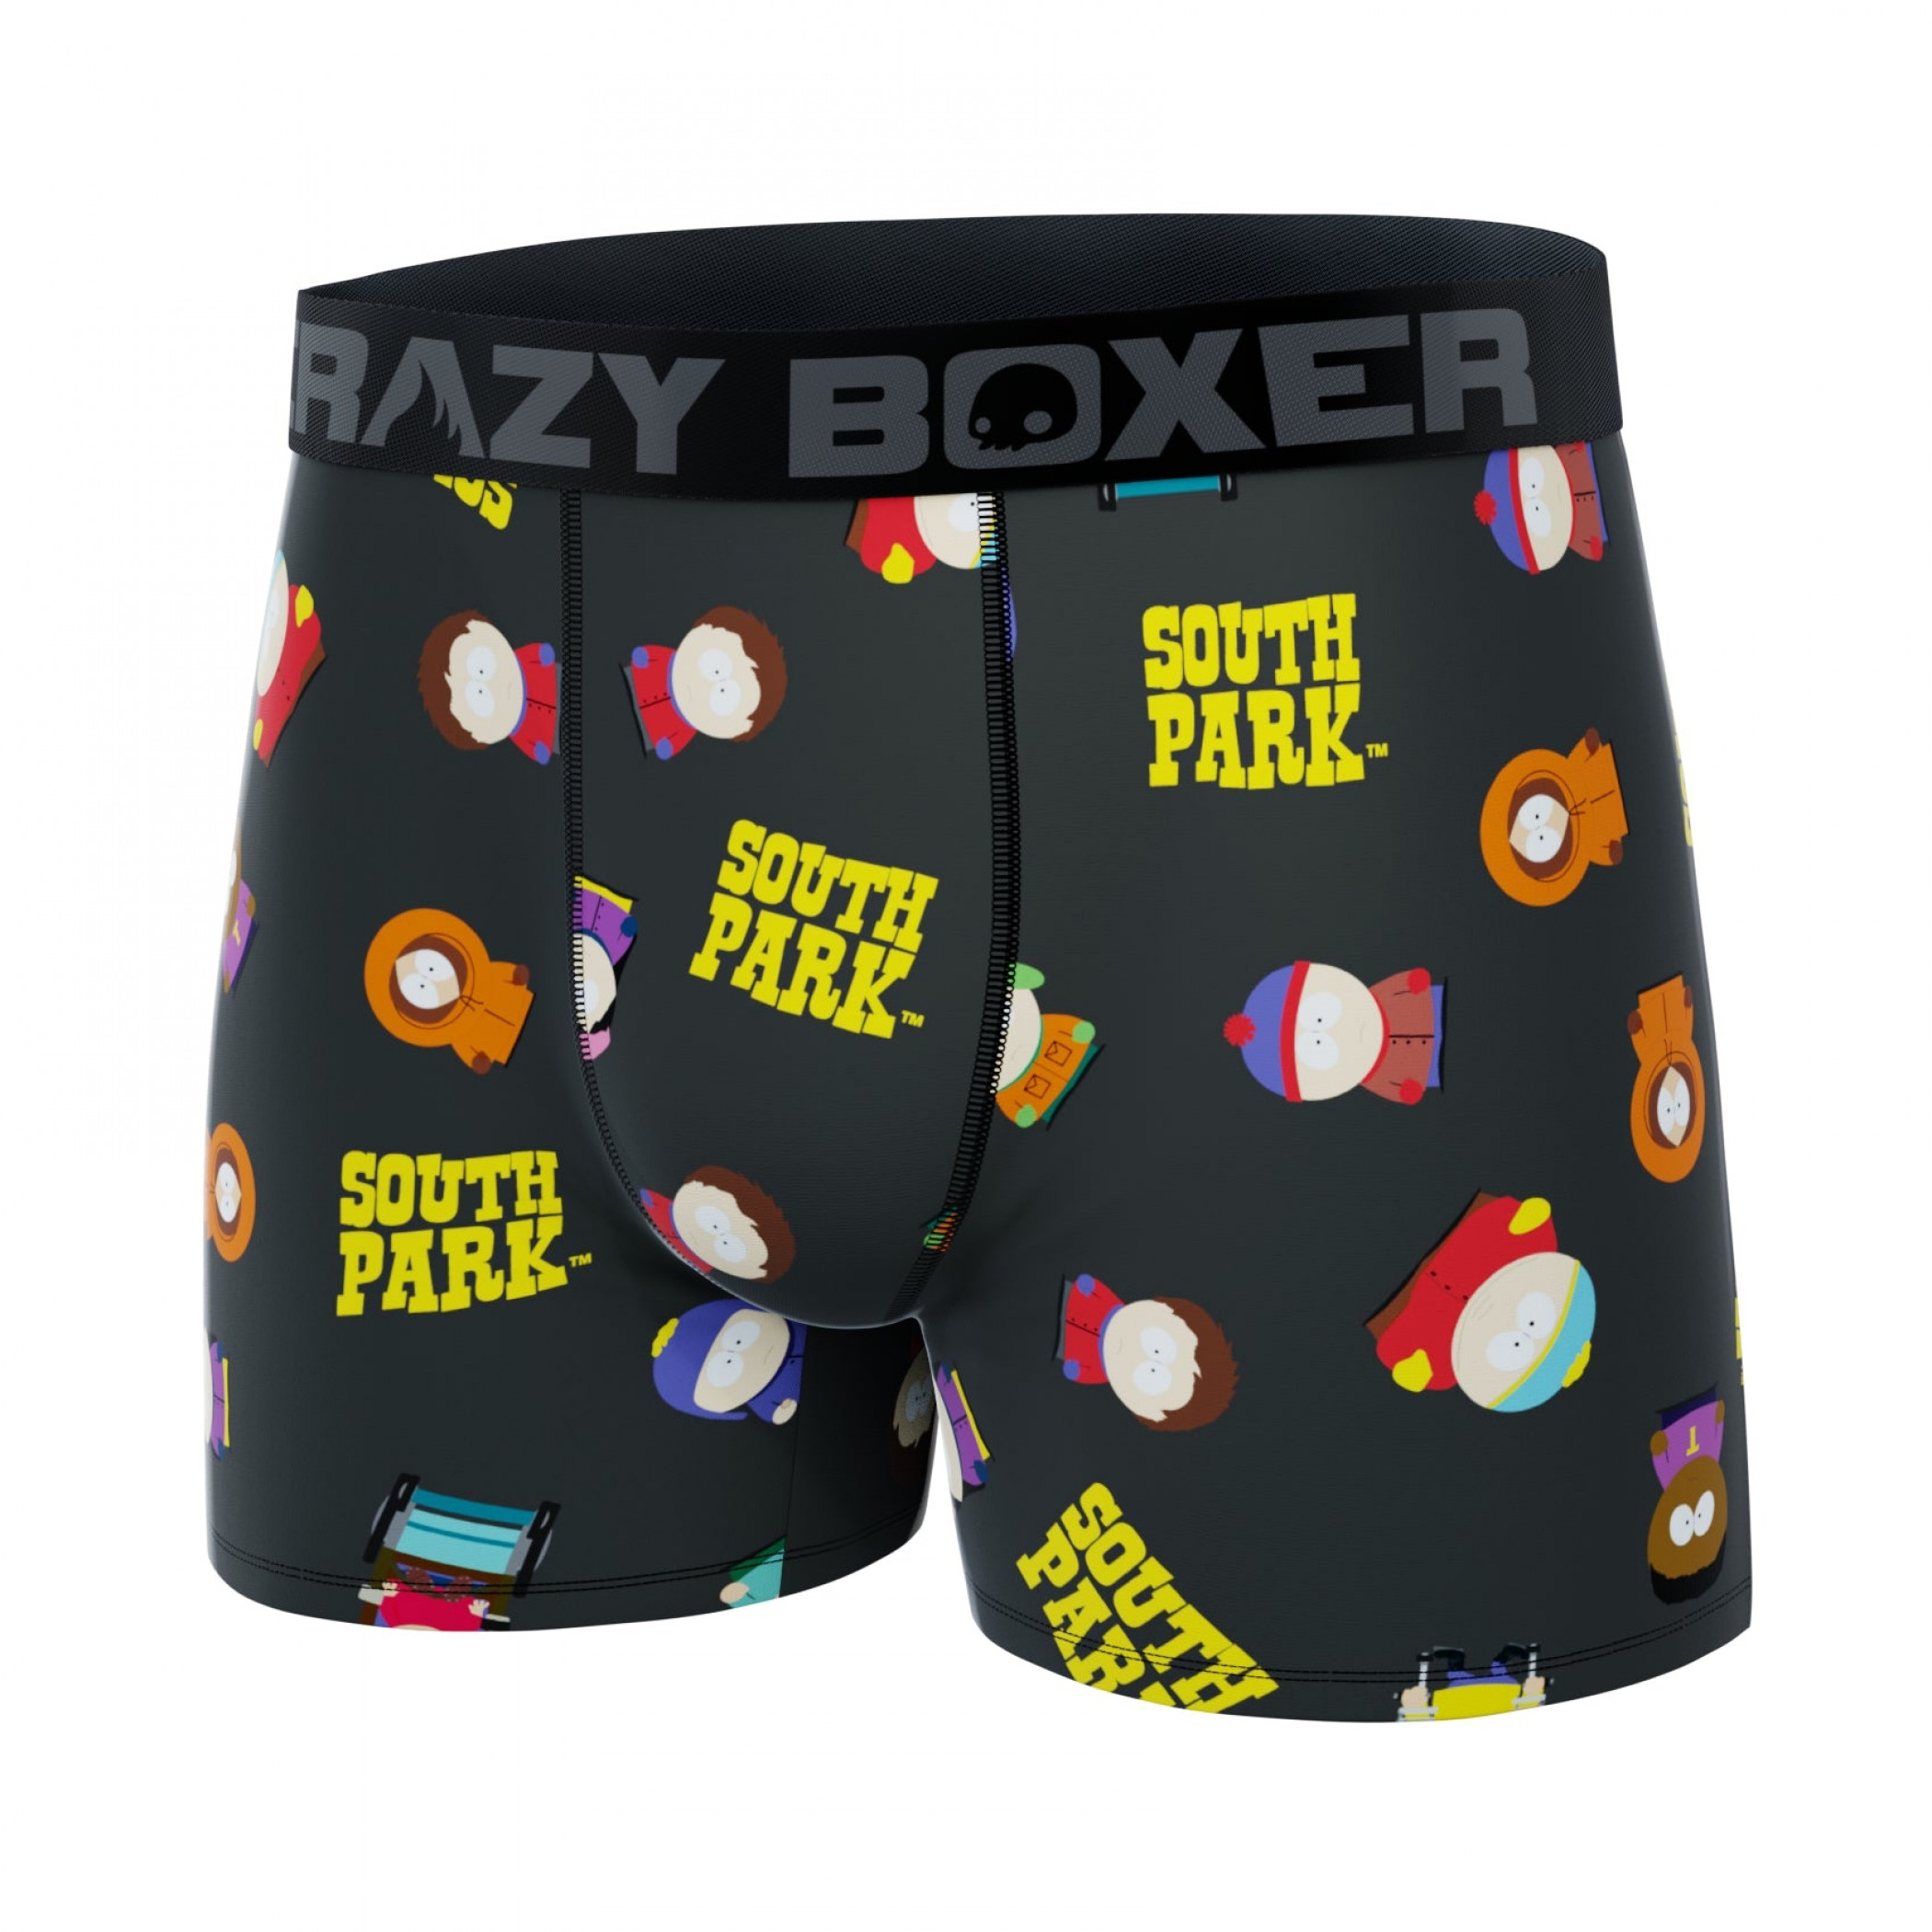 CRAZYBOXER South Park Characters Men's Boxer Briefs (2 Pack